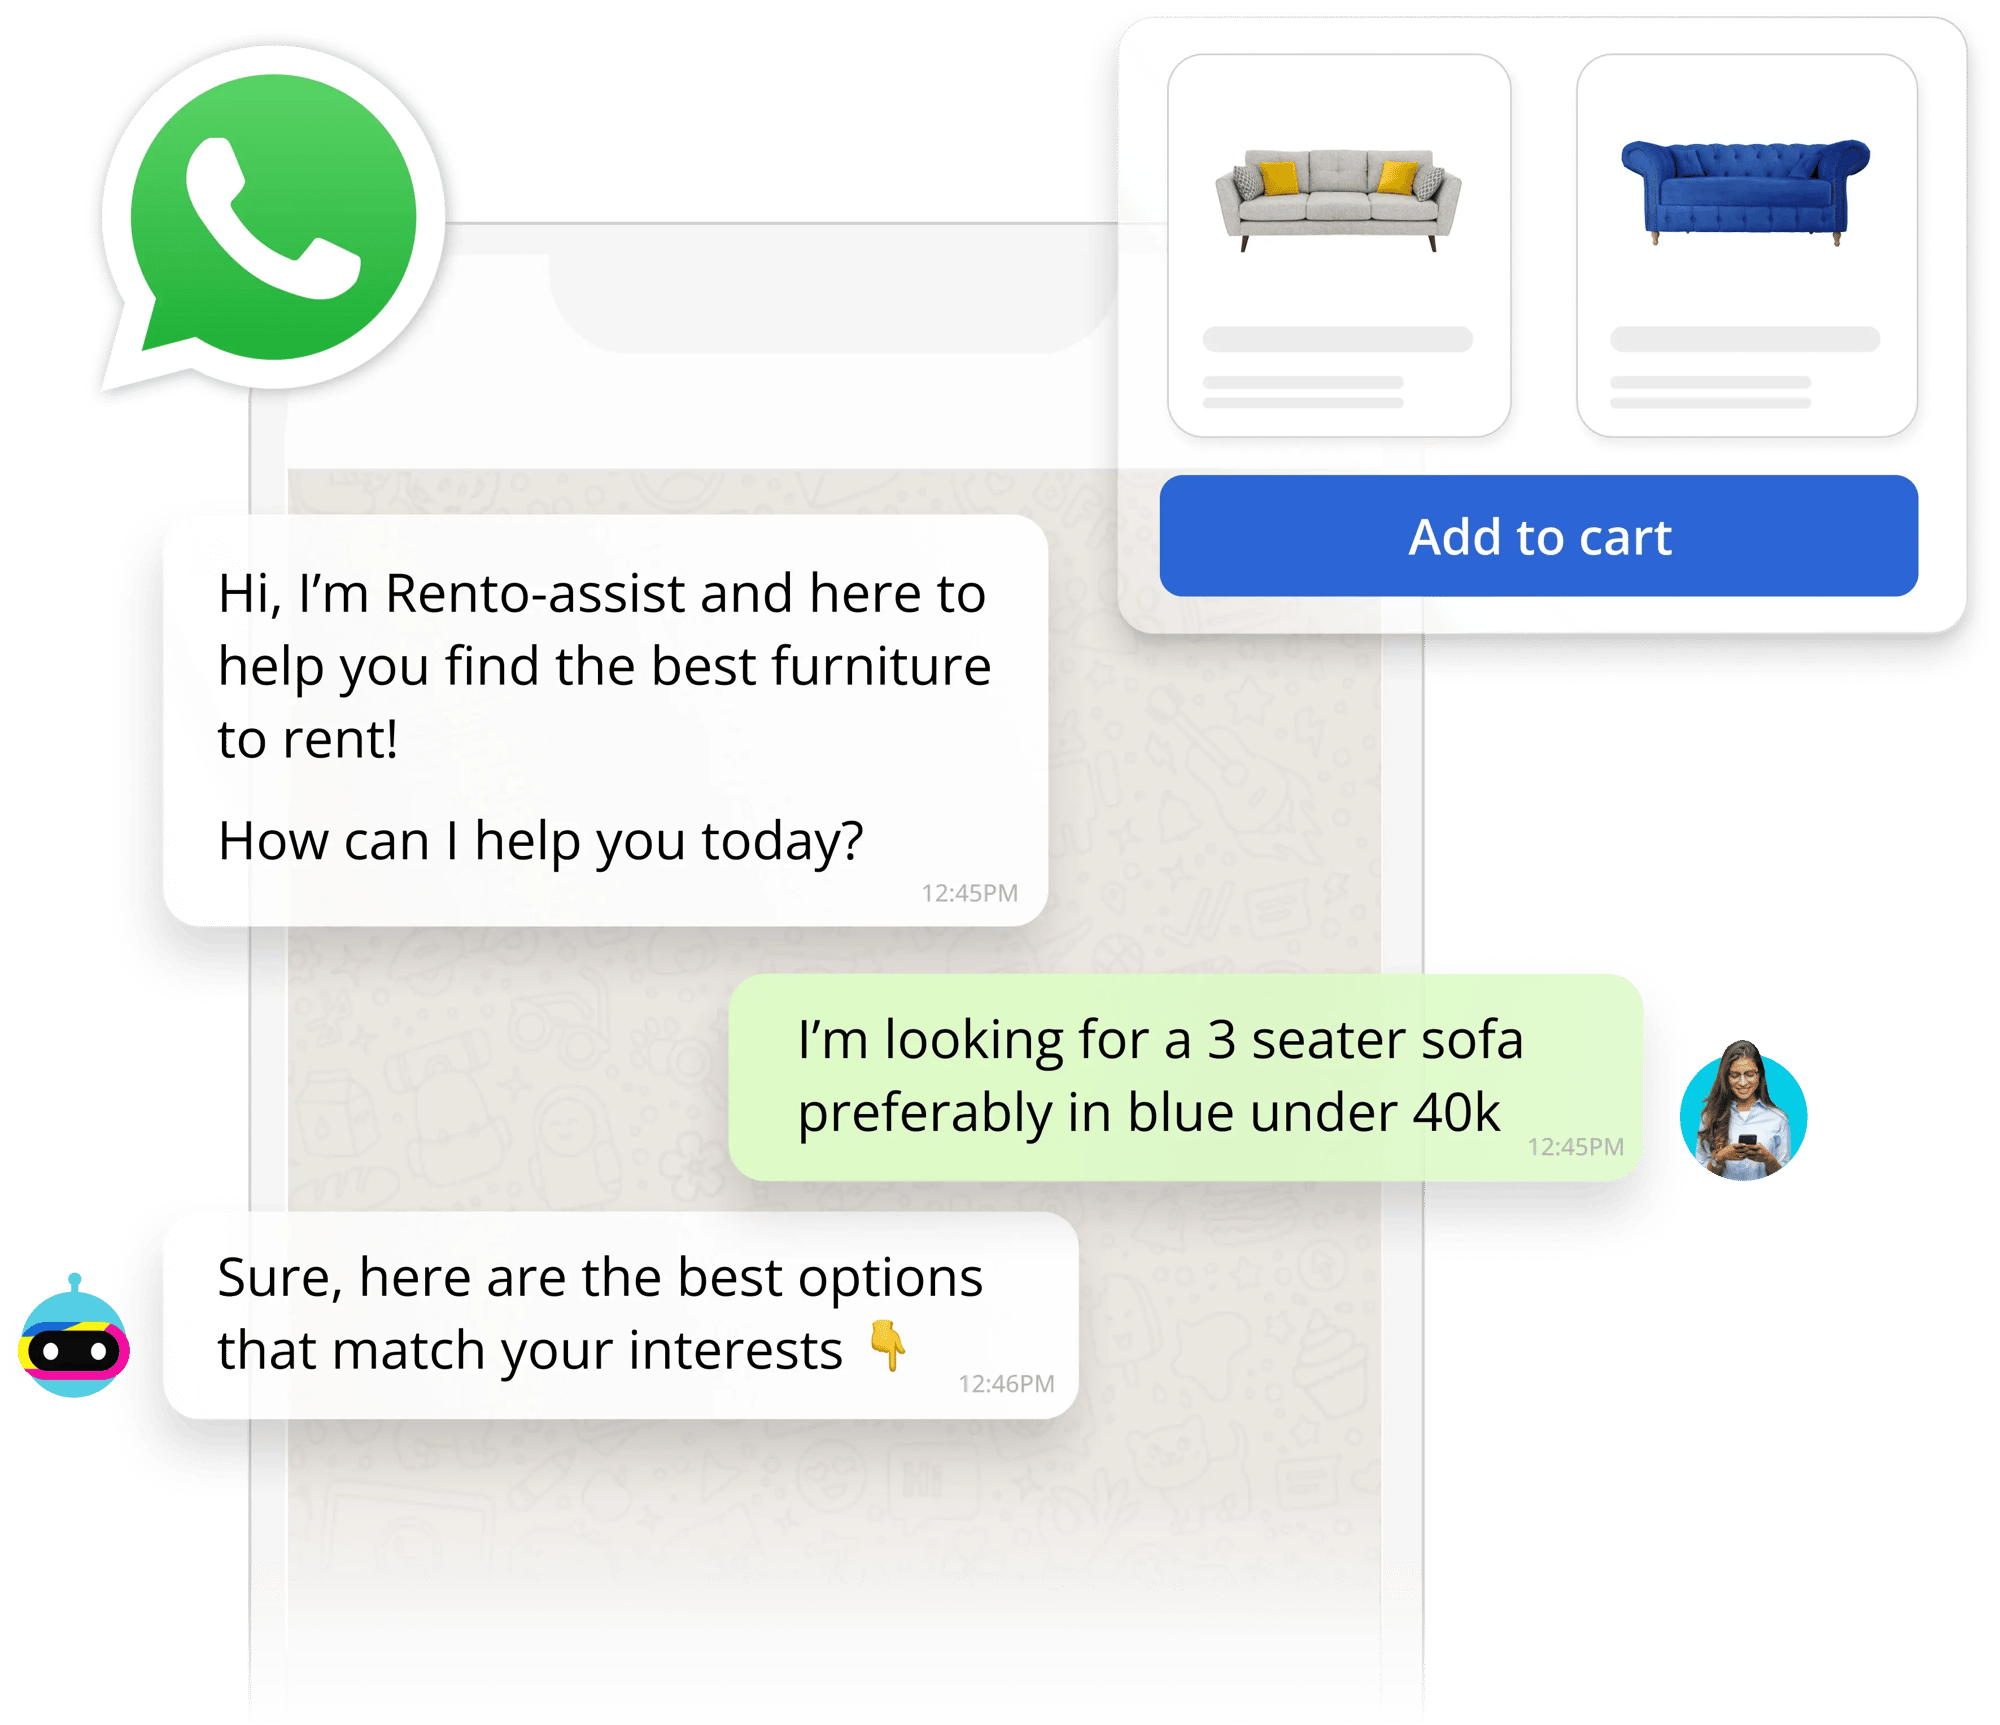 whatsapp-5-10-23